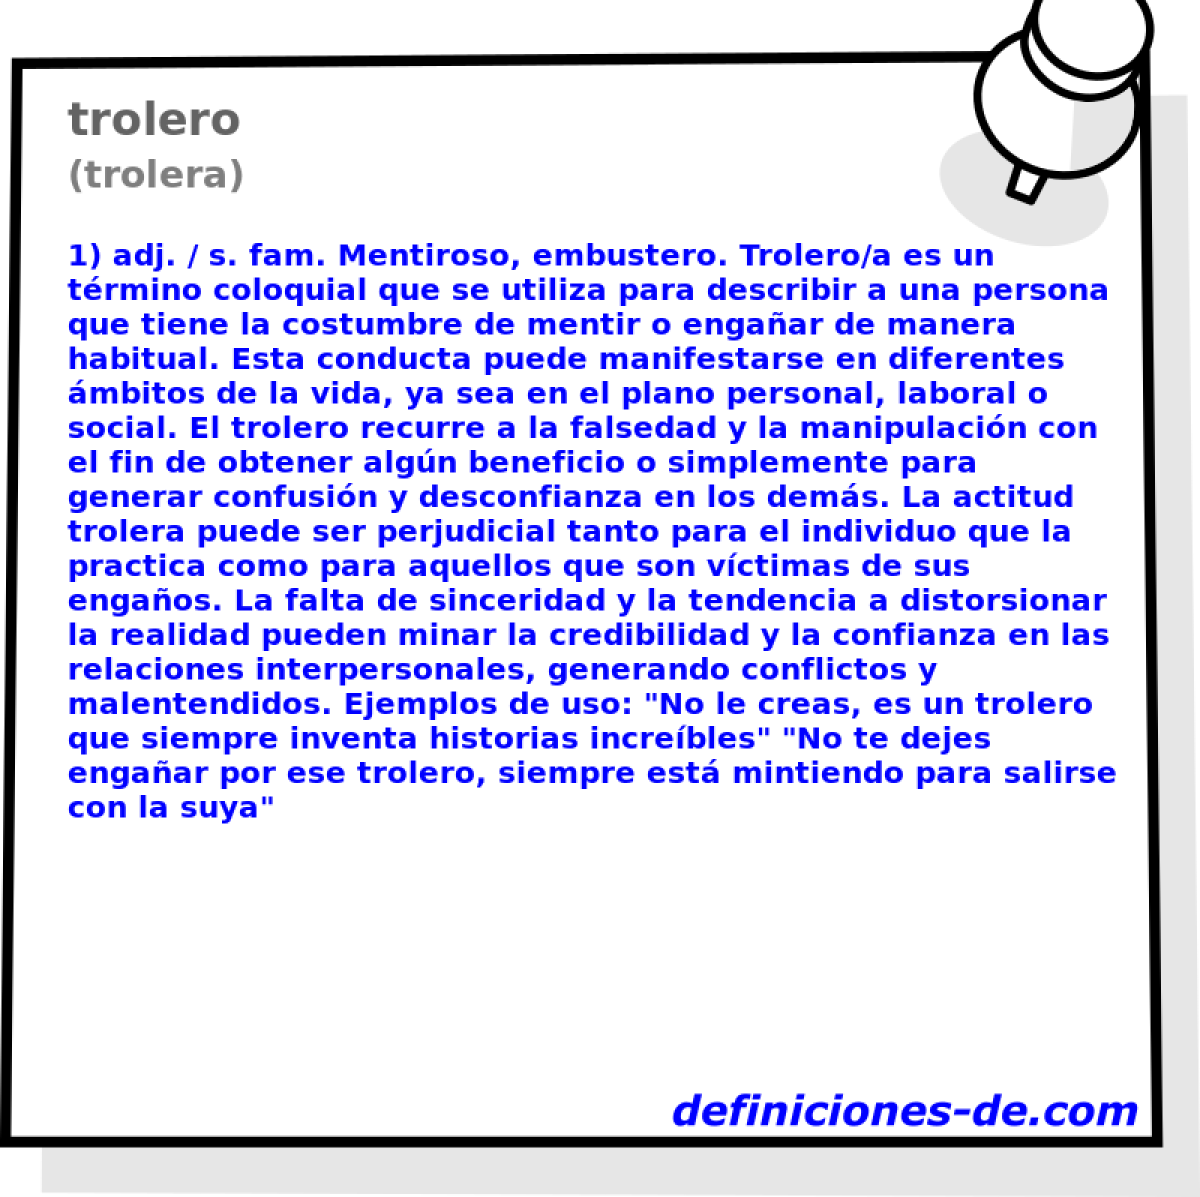 trolero (trolera)